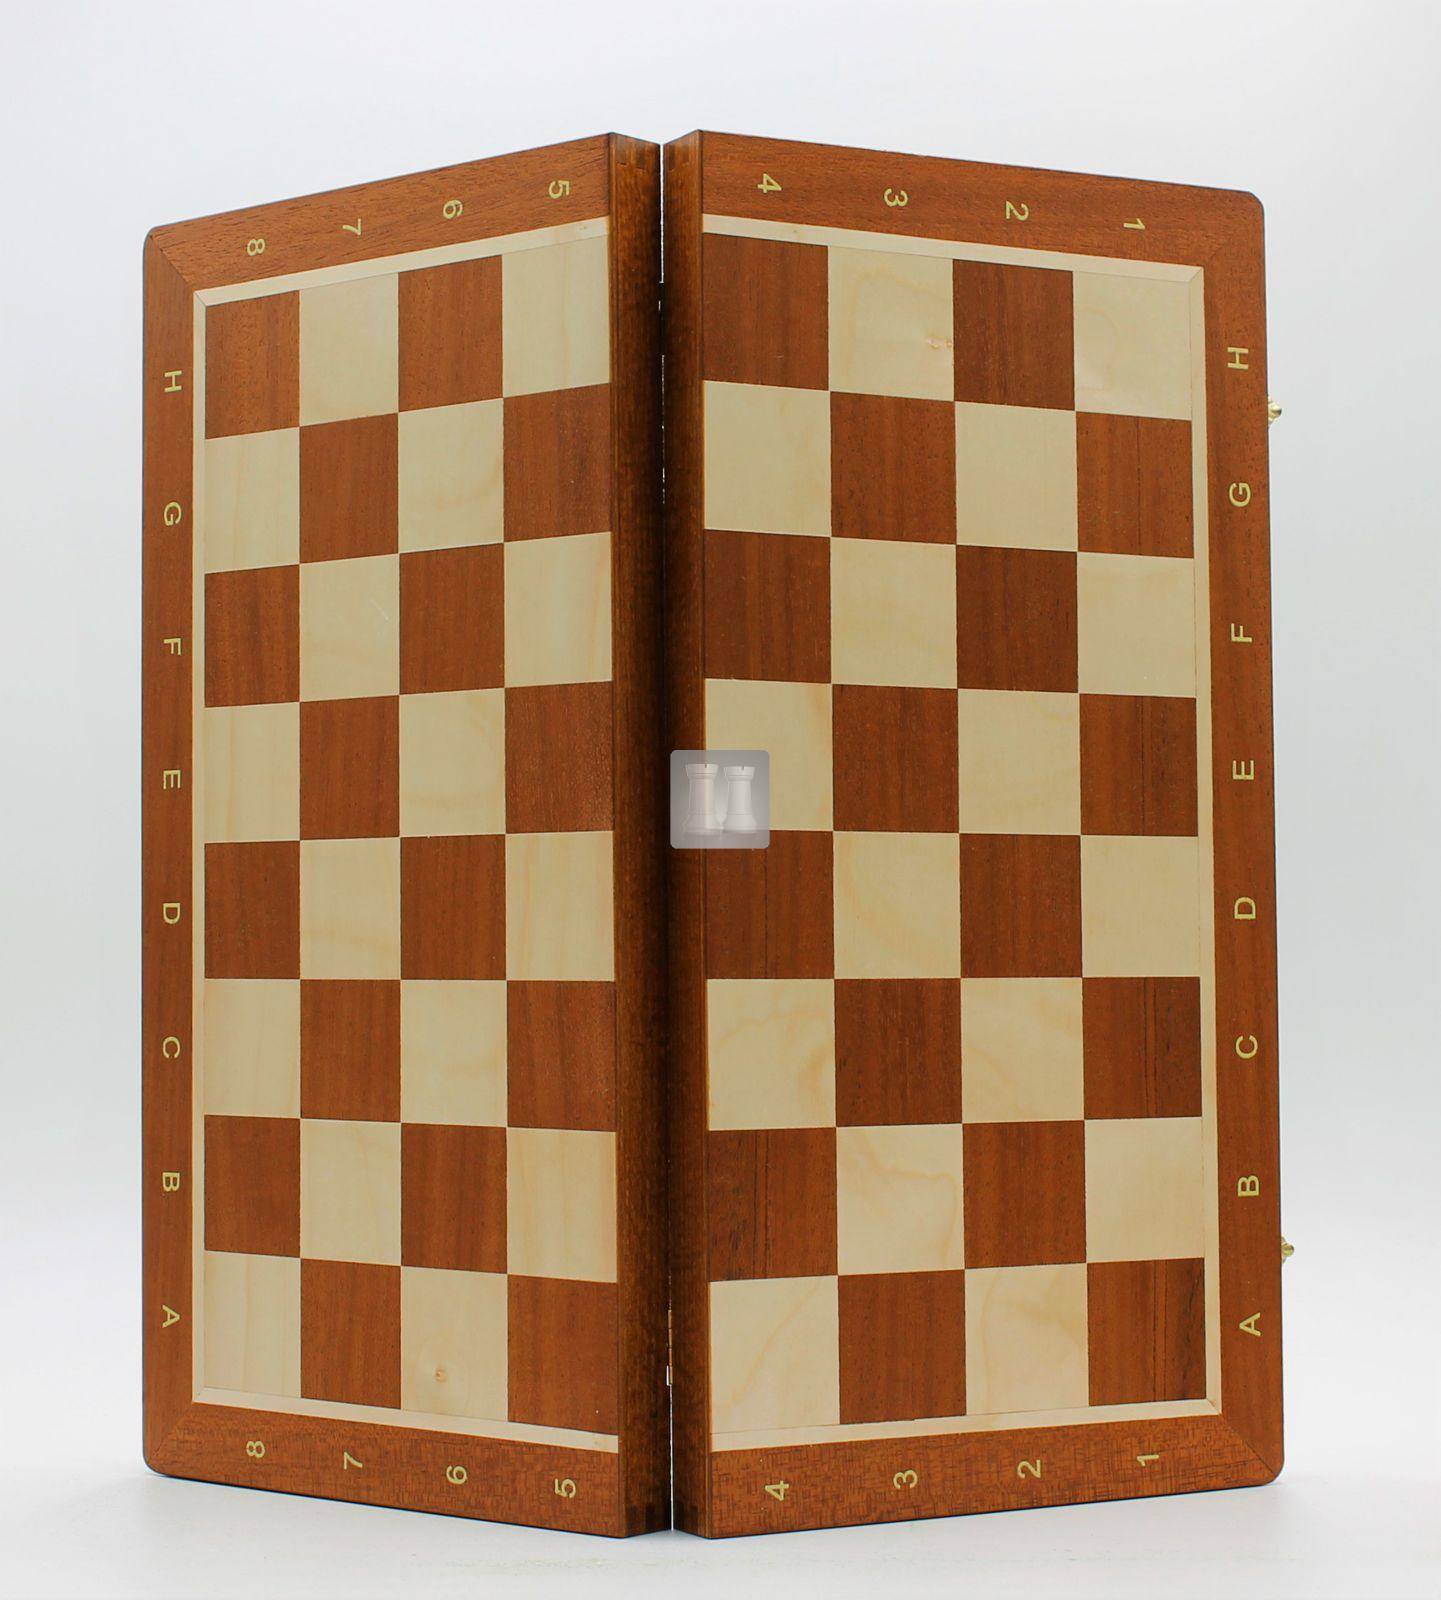 Tradizionali in legno pieghevole set di scacchi scacchiera con Custodia Foderato 30cm x 30cm 